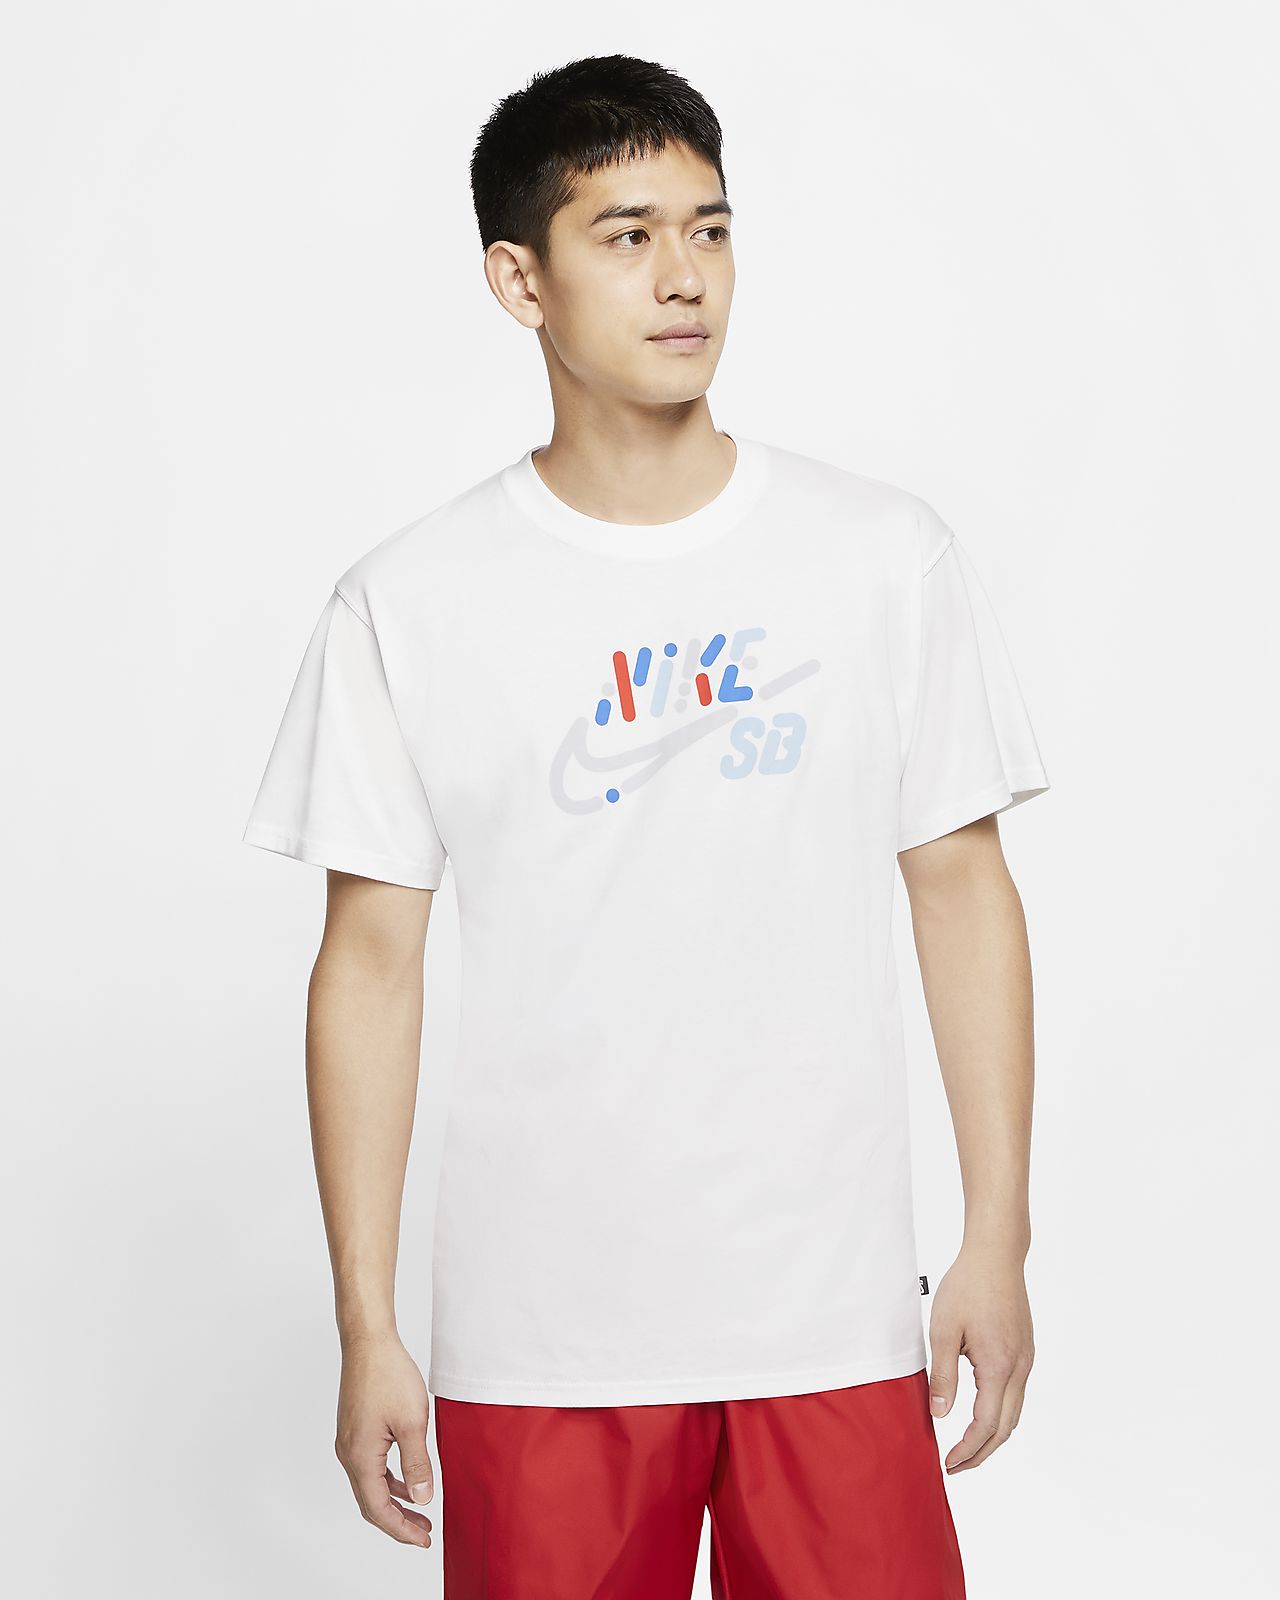 Nike公式 ナイキ Sb メンズ ロゴ スケートボード Tシャツ オンライン